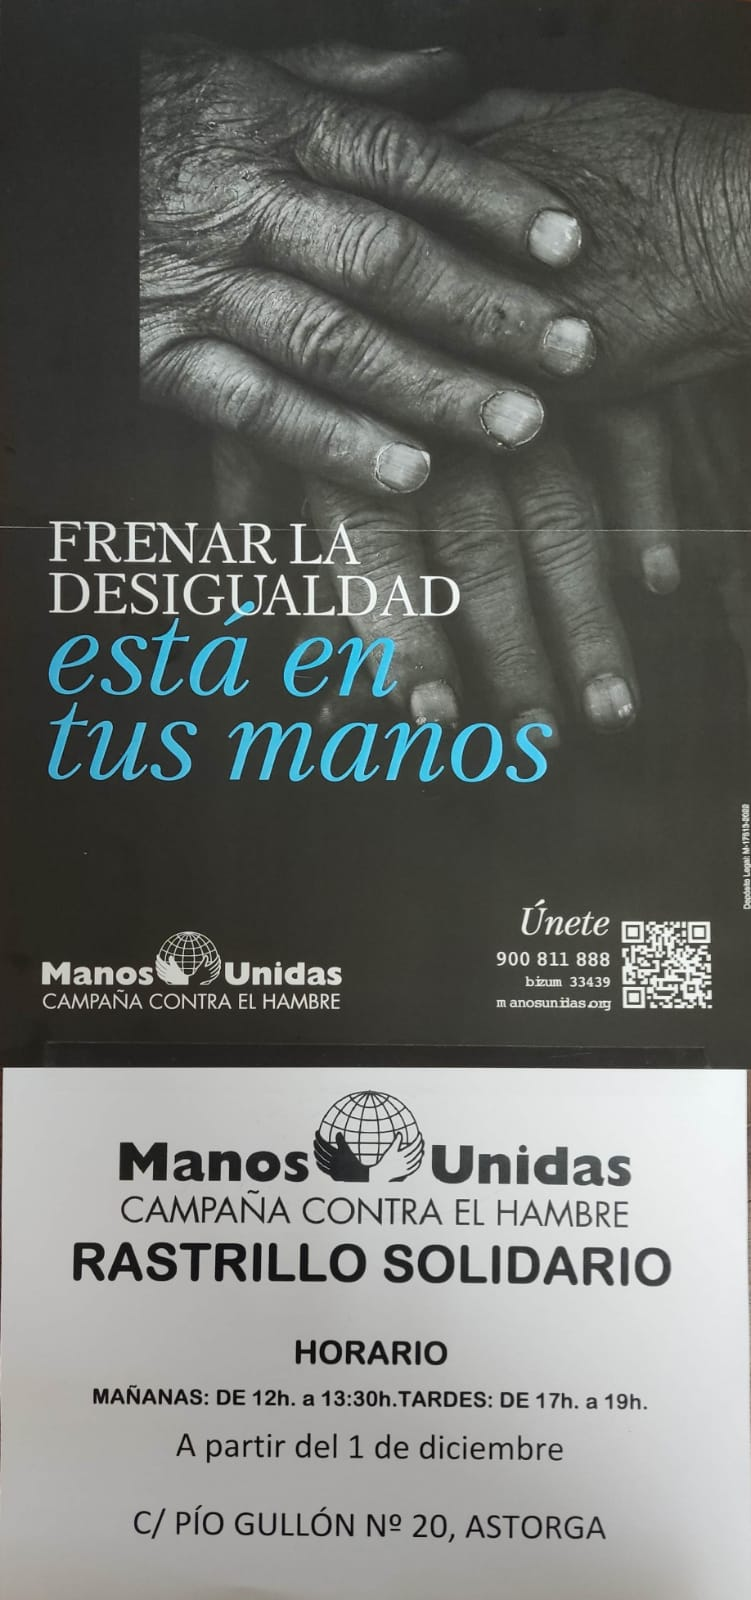 El rastrillo solidario de Manos Unidas abre el 1 de diciembre en Pío Gullón